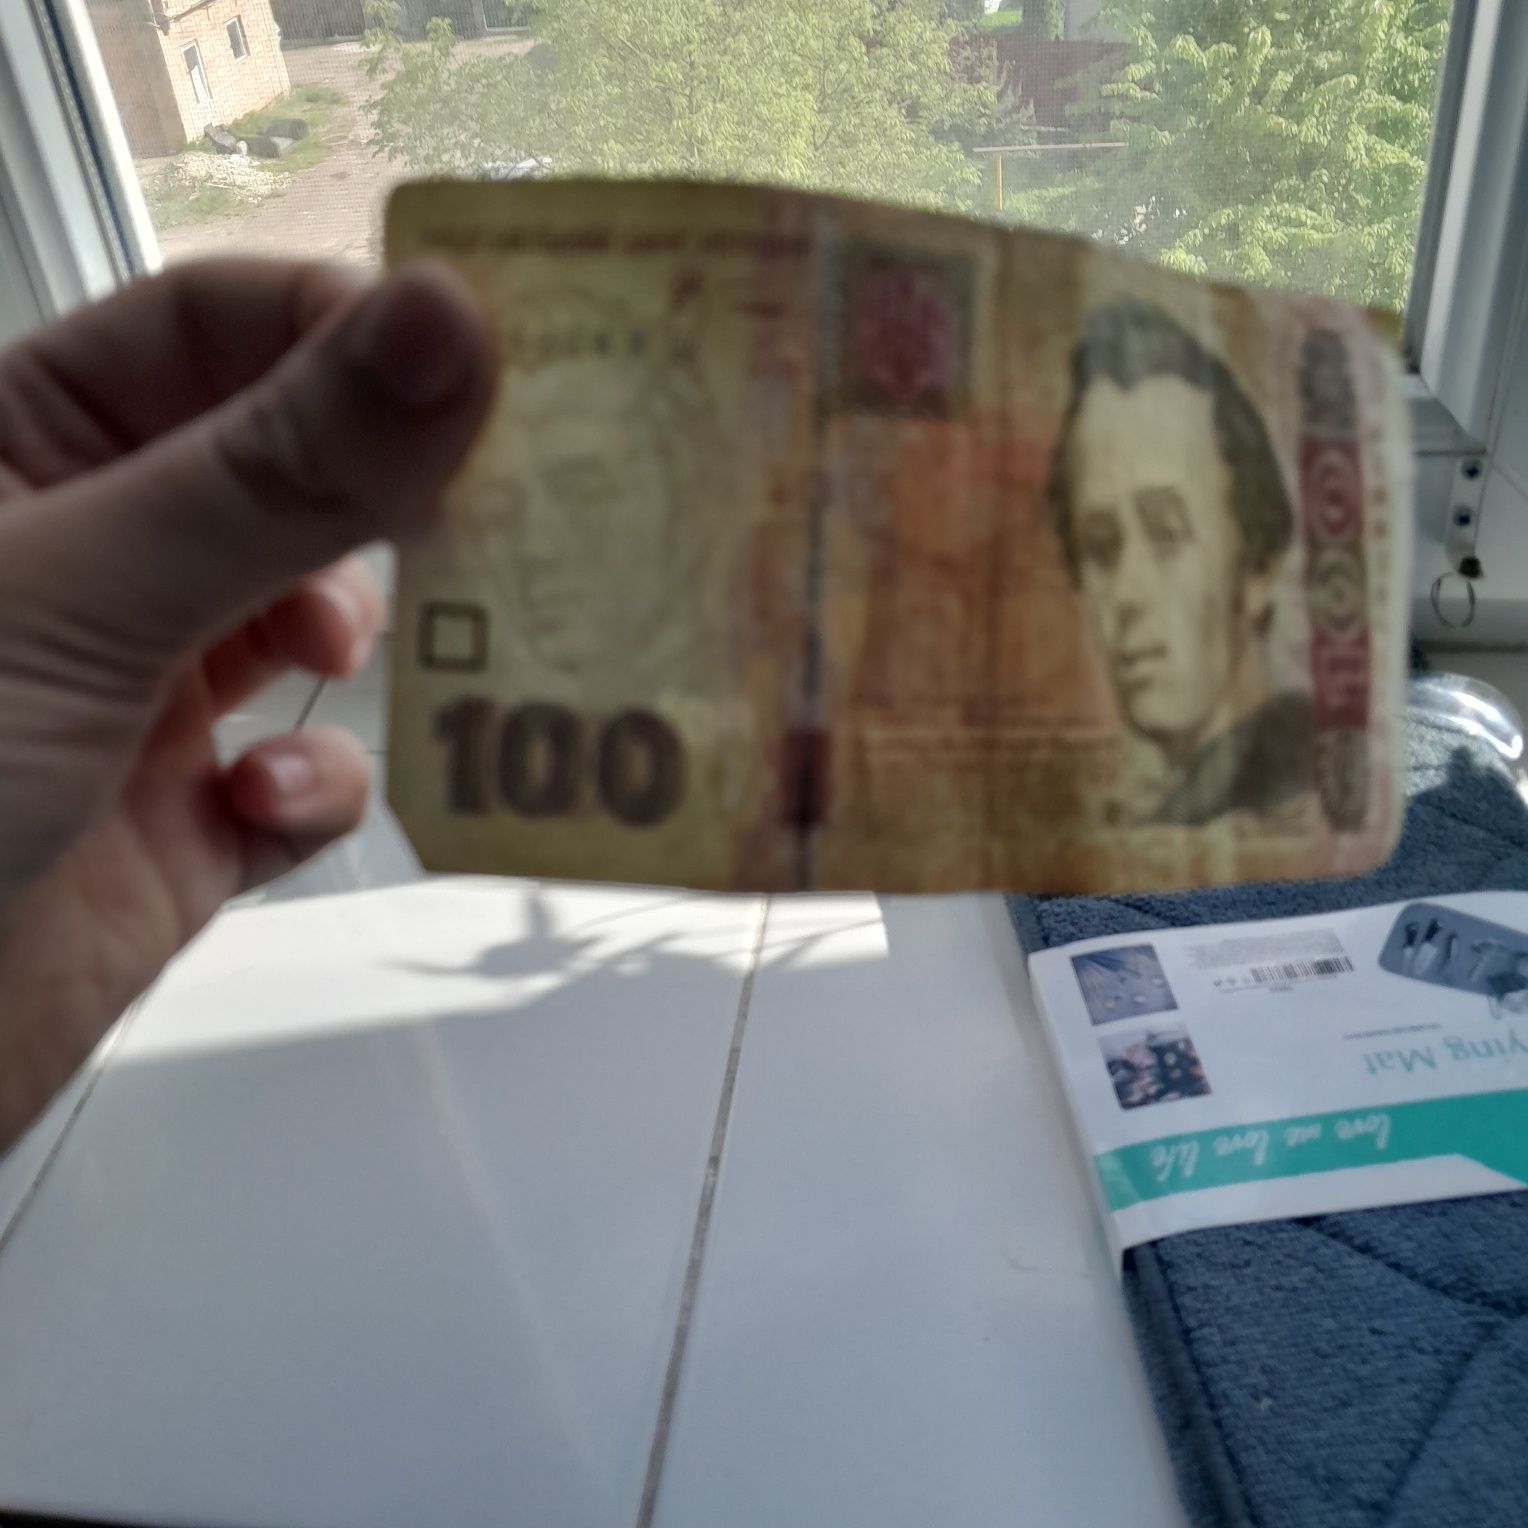 100 грн 2005 року